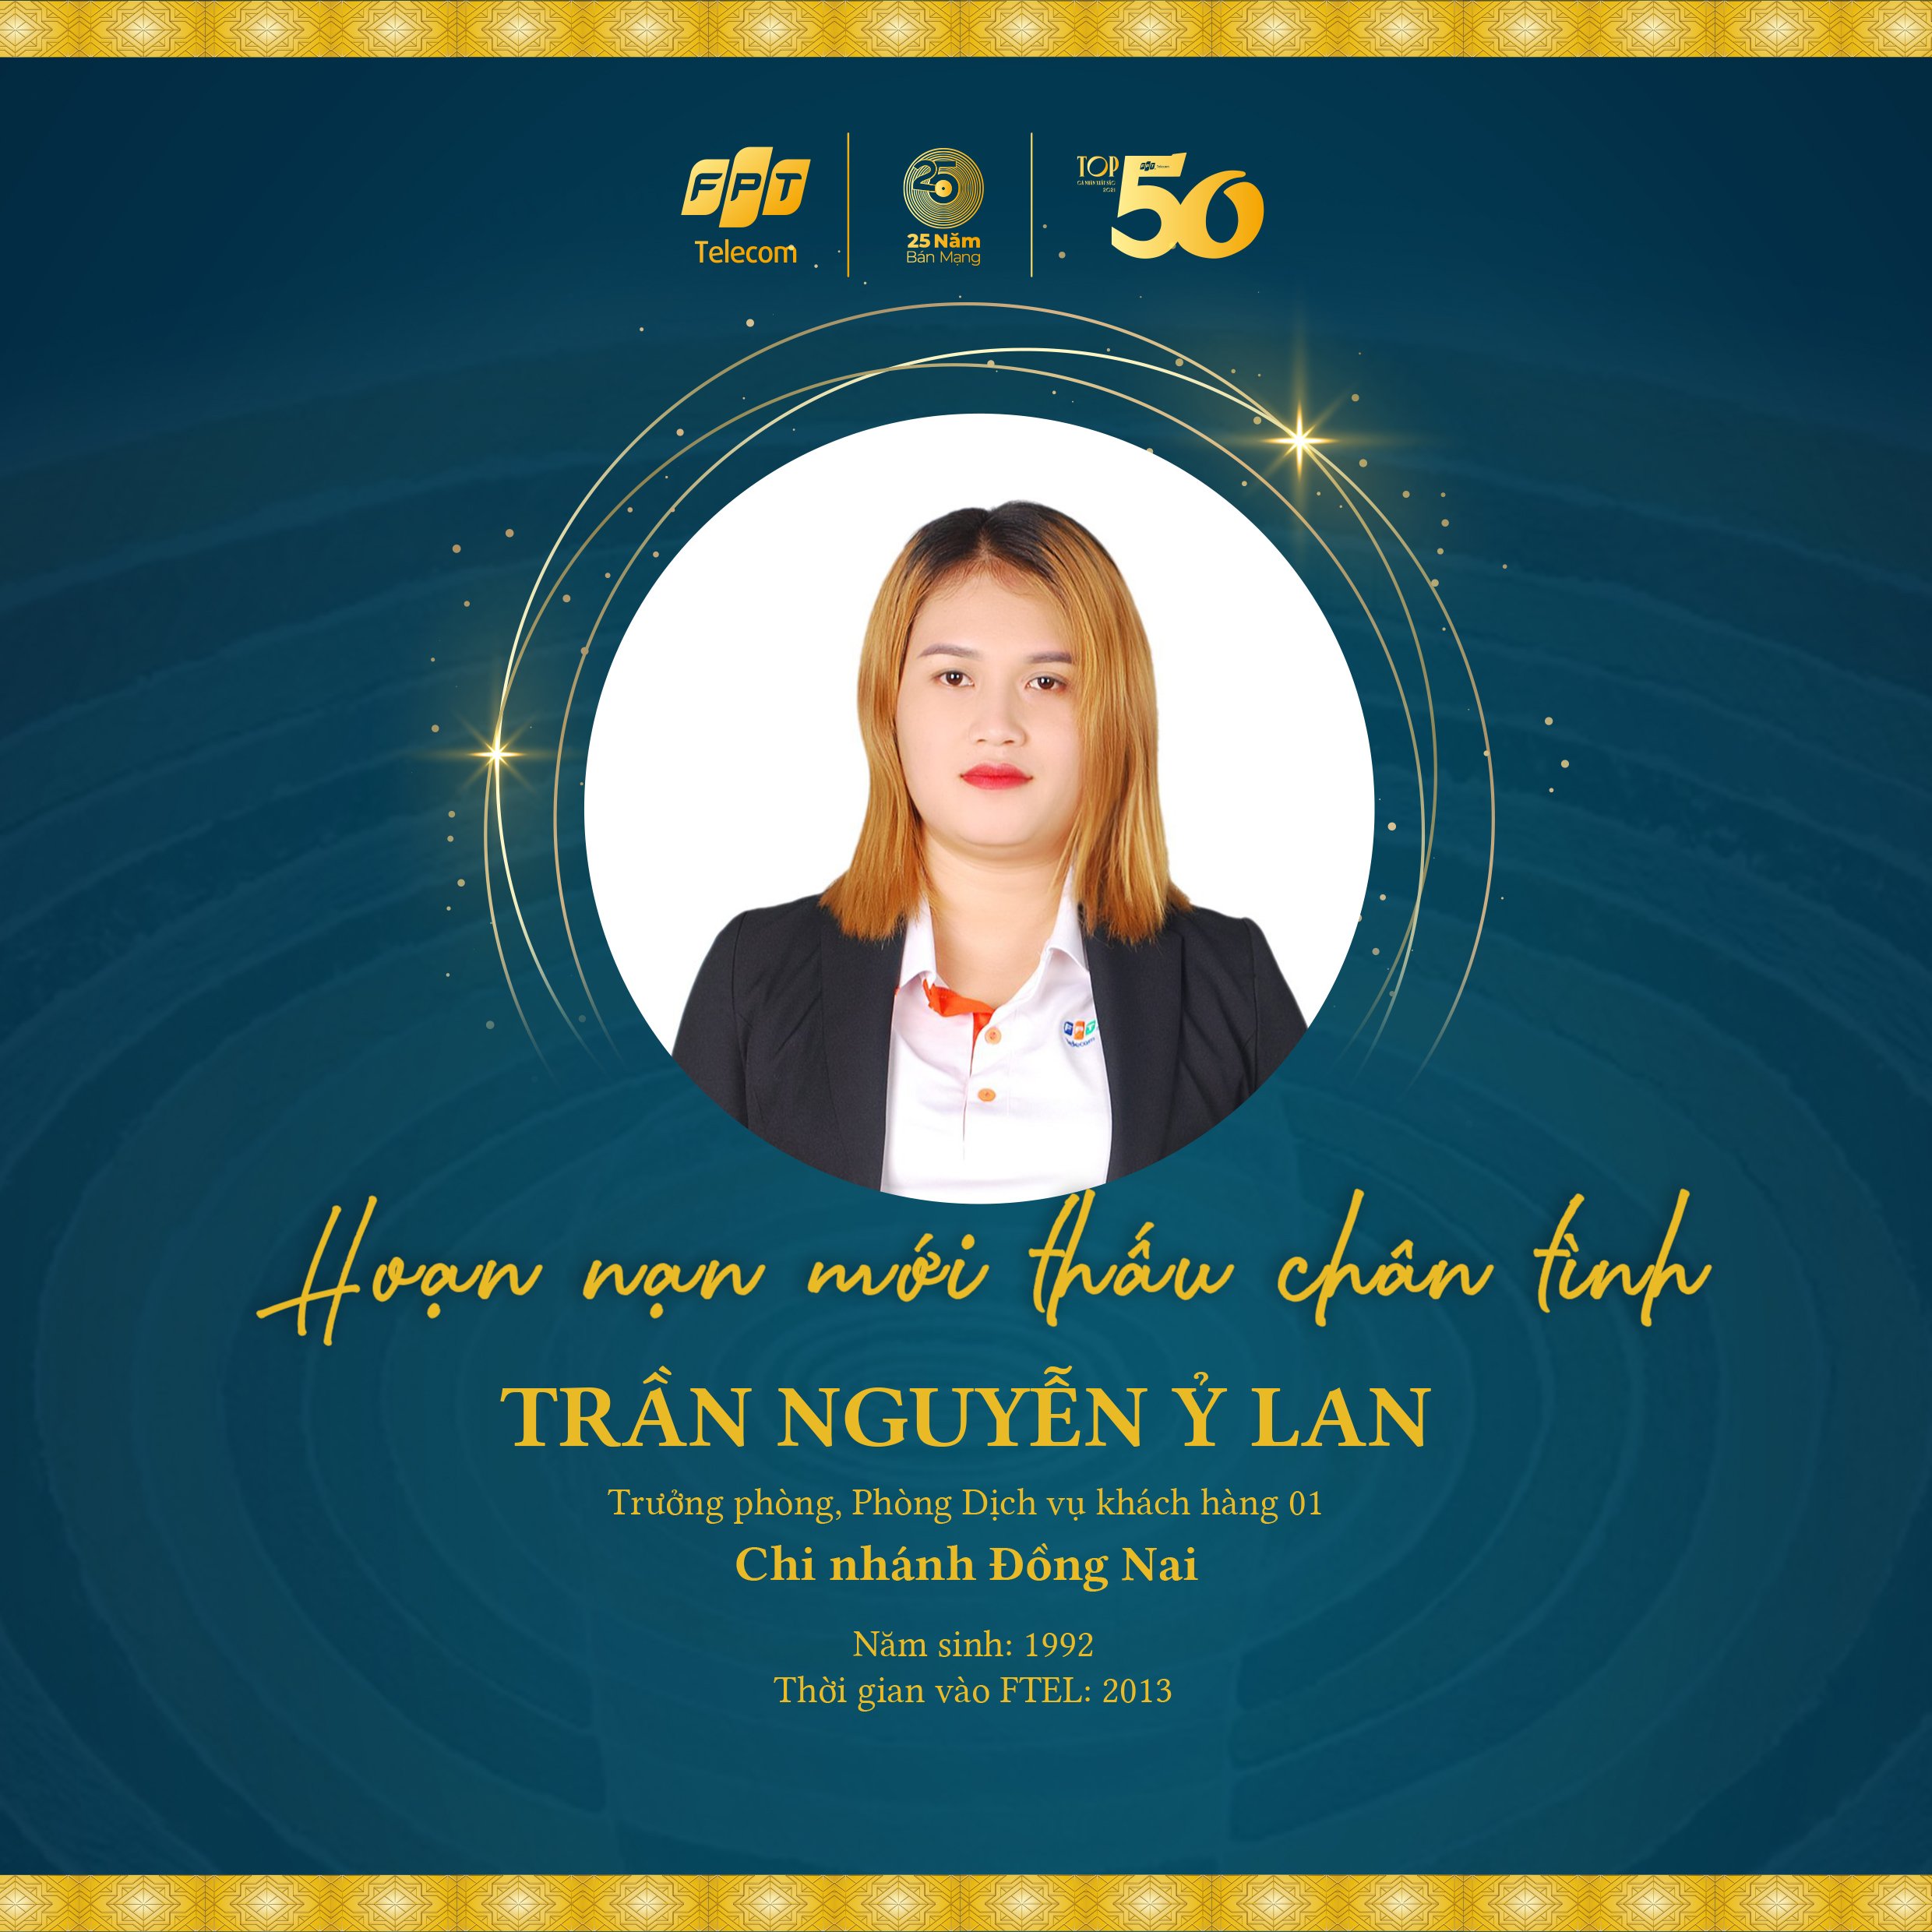 [TOP 50 FTEL 2021] Trần Nguyễn Ỷ Lan: Hoạn nạn mới thấu chân tình - FOXNEWS